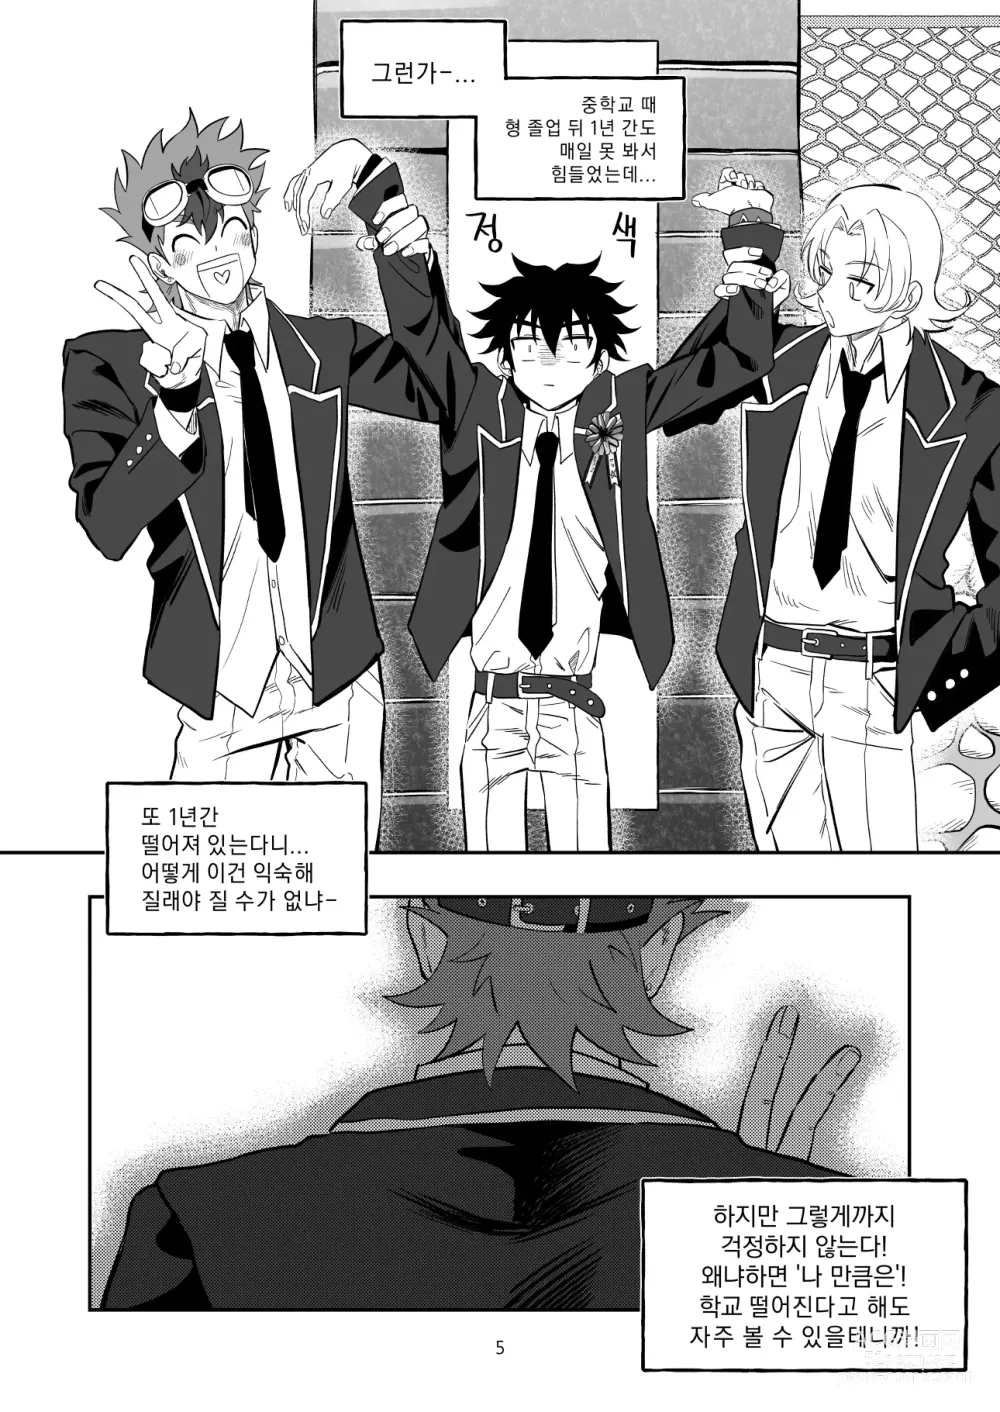 Page 6 of doujinshi Final Countdown